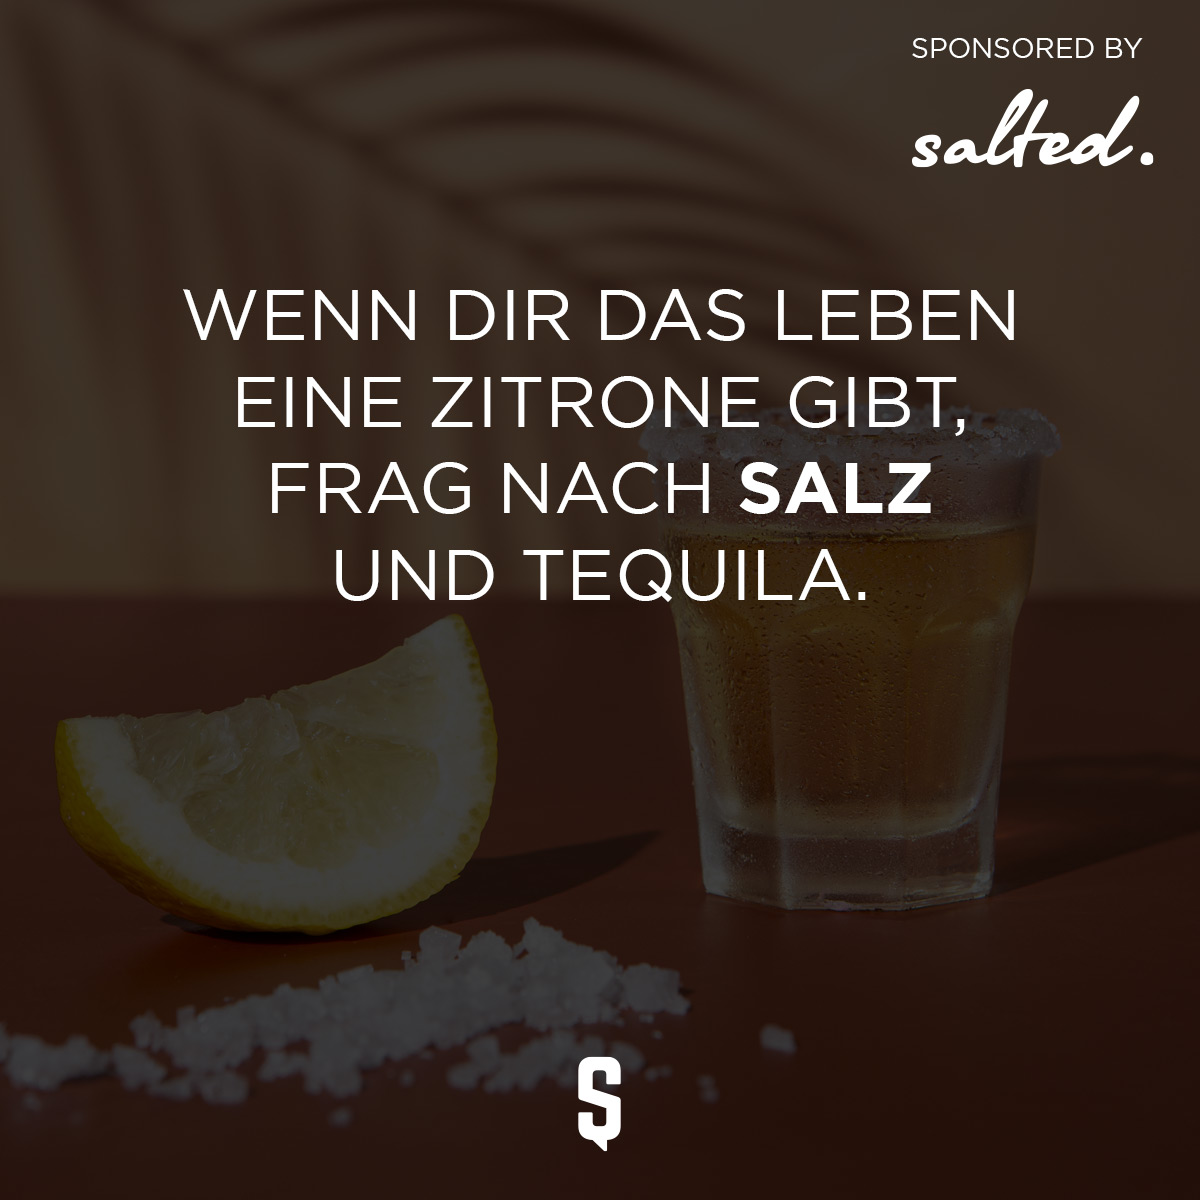 Wenn Dir das Leben Zitronen gibt, frag nach Salz und Tequila.